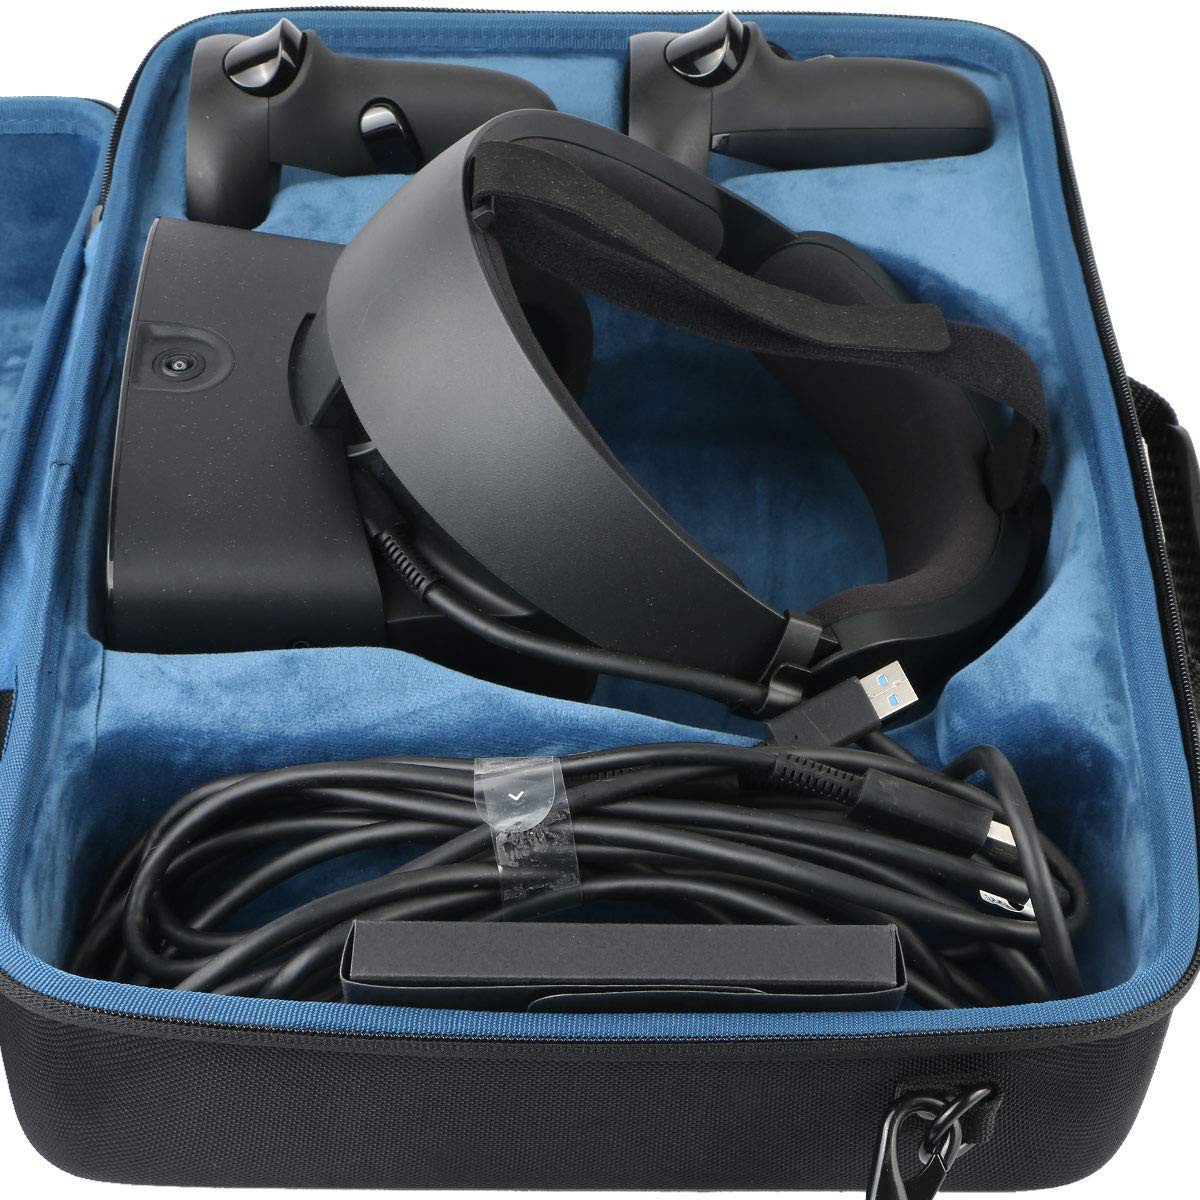 oculus rift s travel case